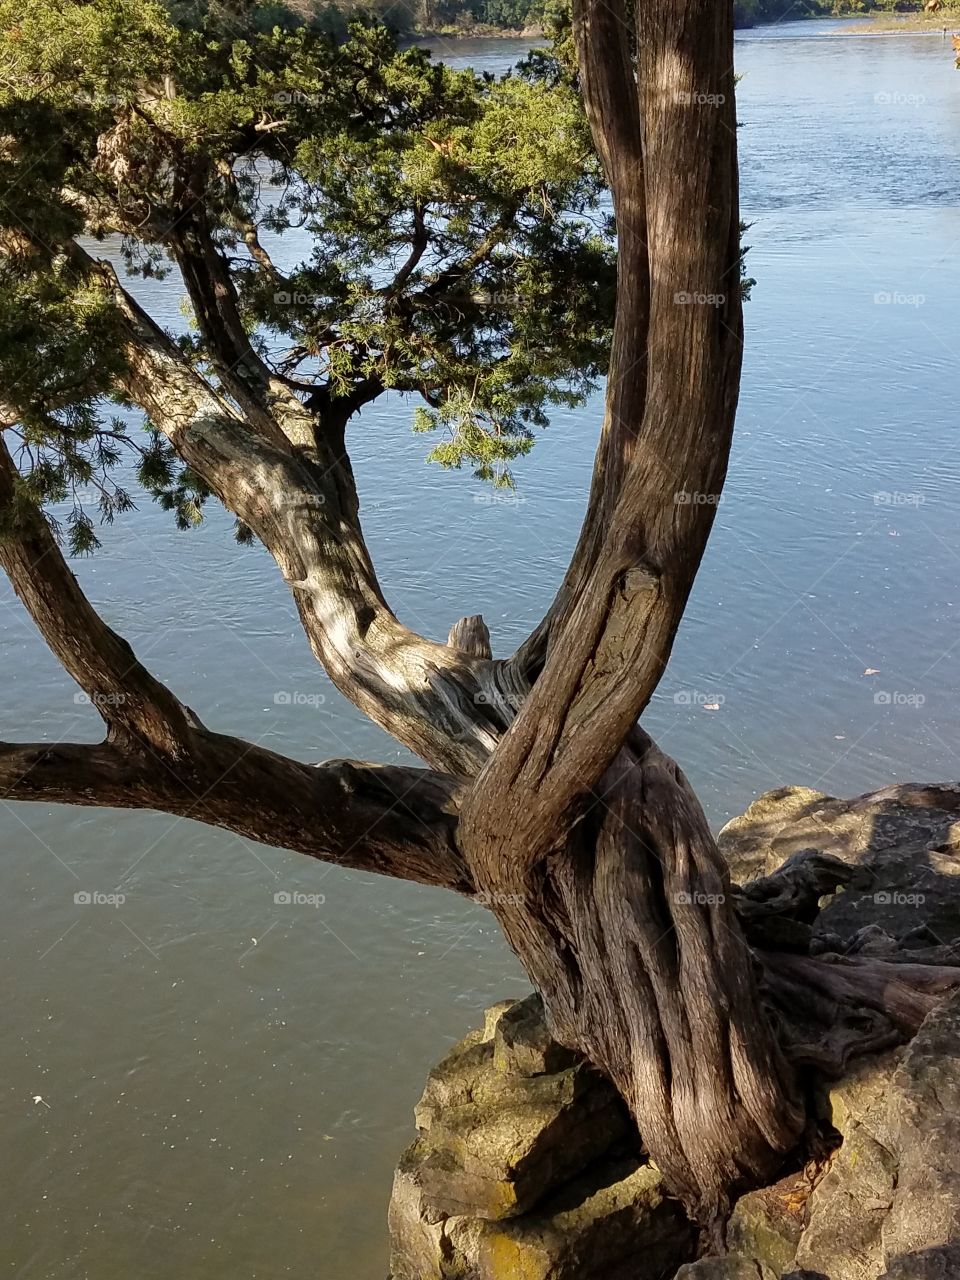 Twisted Tree